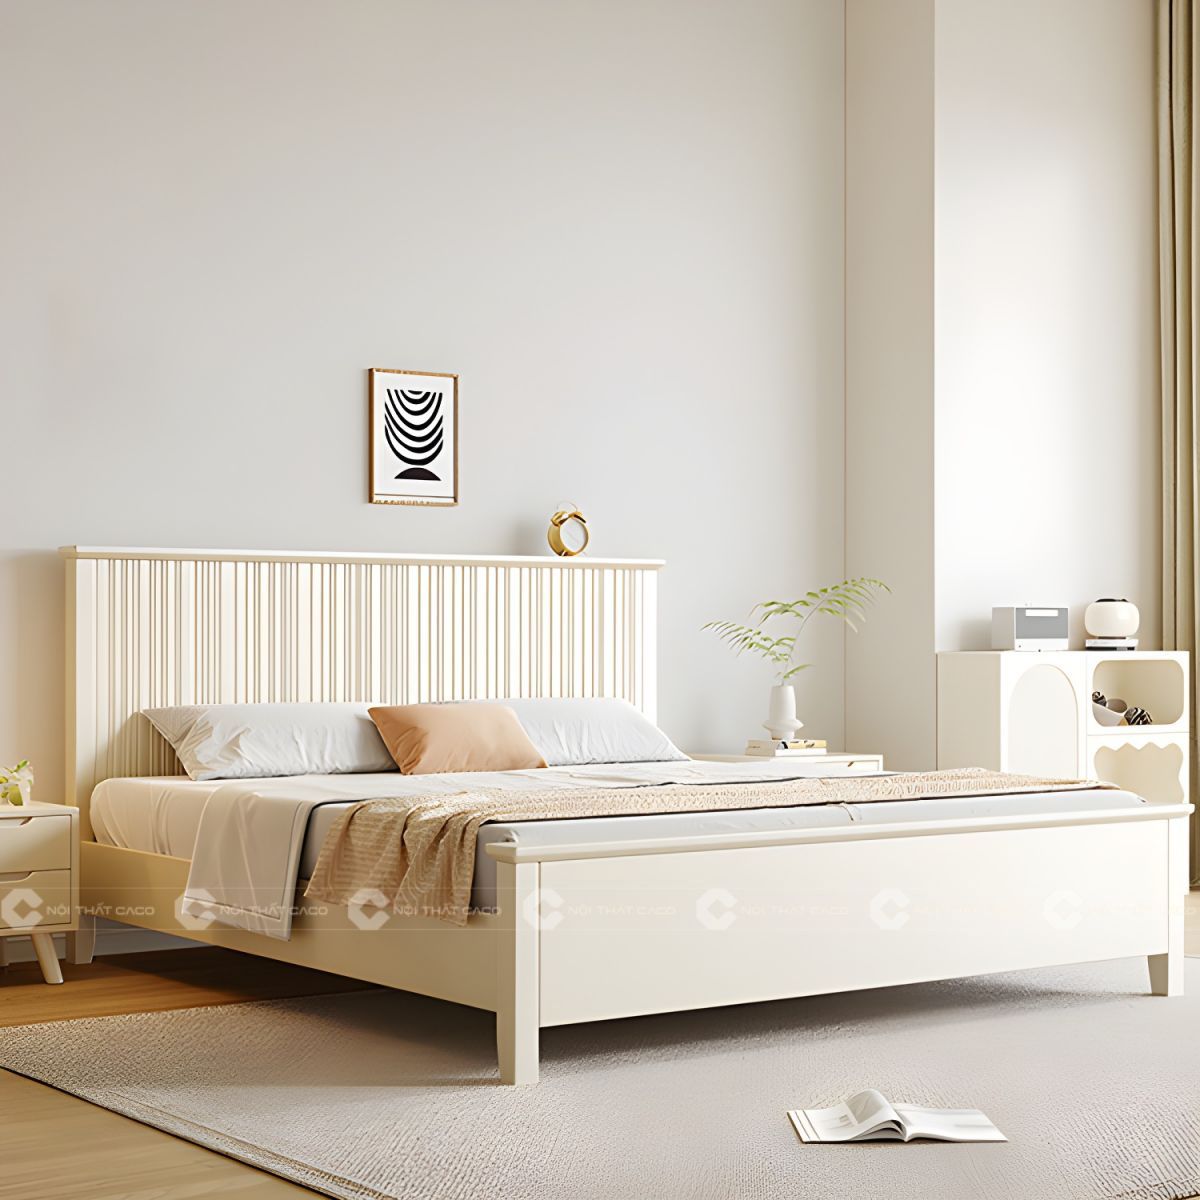 Giường ngủ gỗ tự nhiên thiết kế thanh lịch